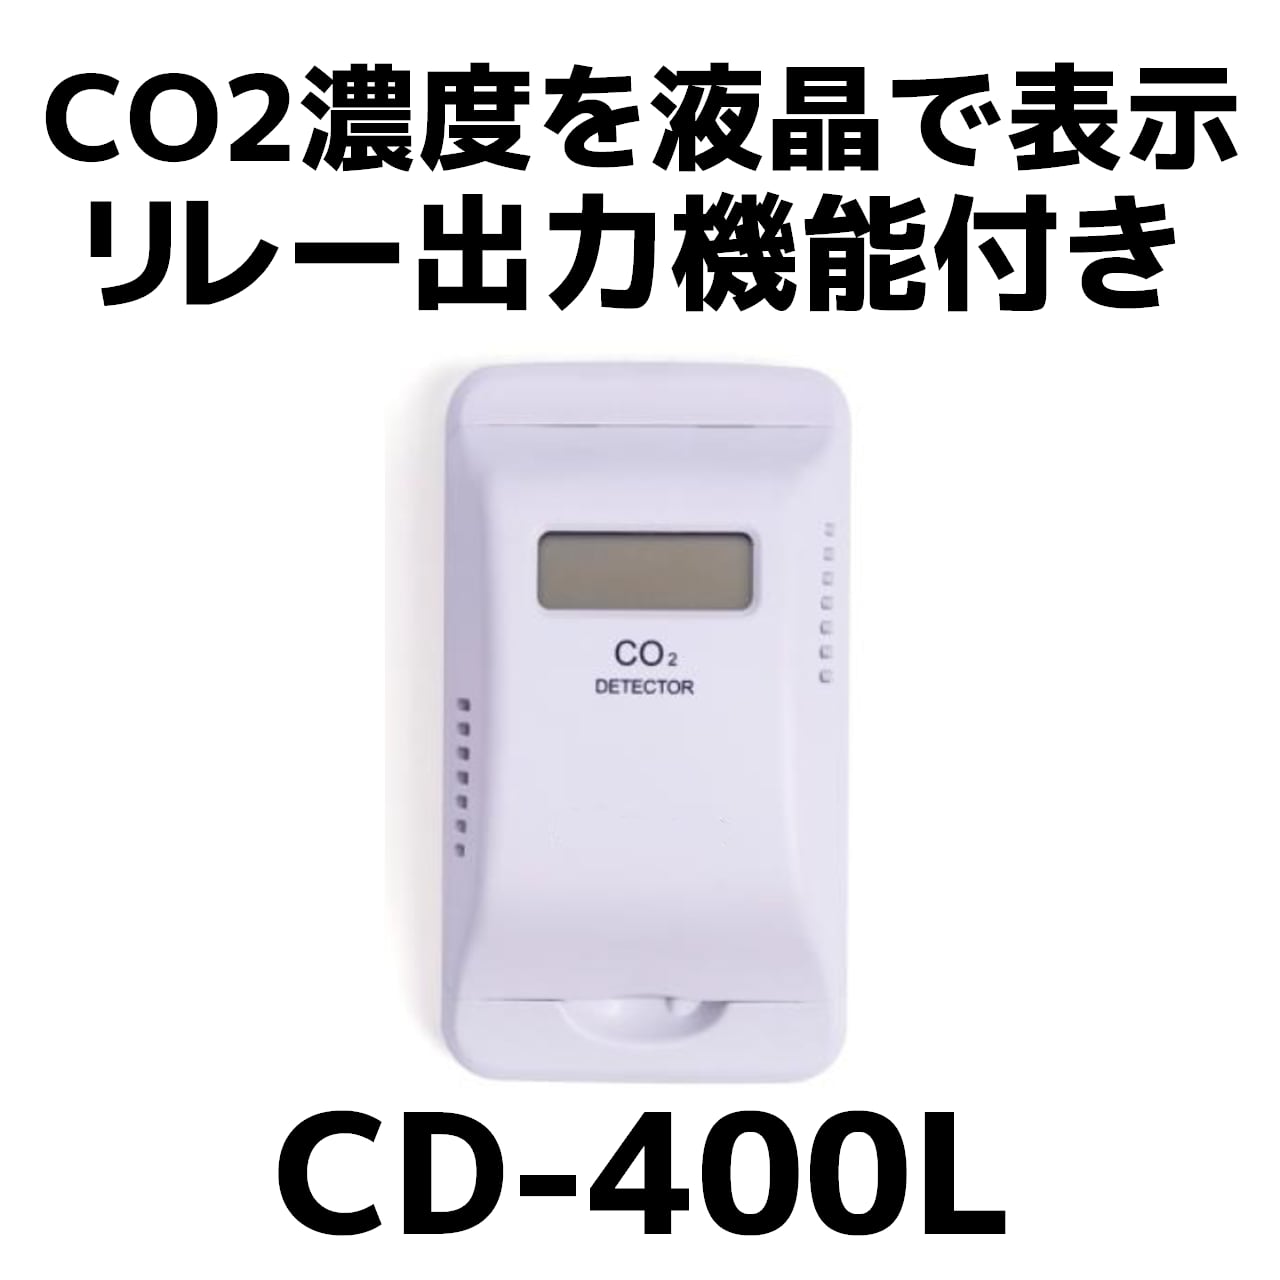 co2detector /二酸化炭素測定器